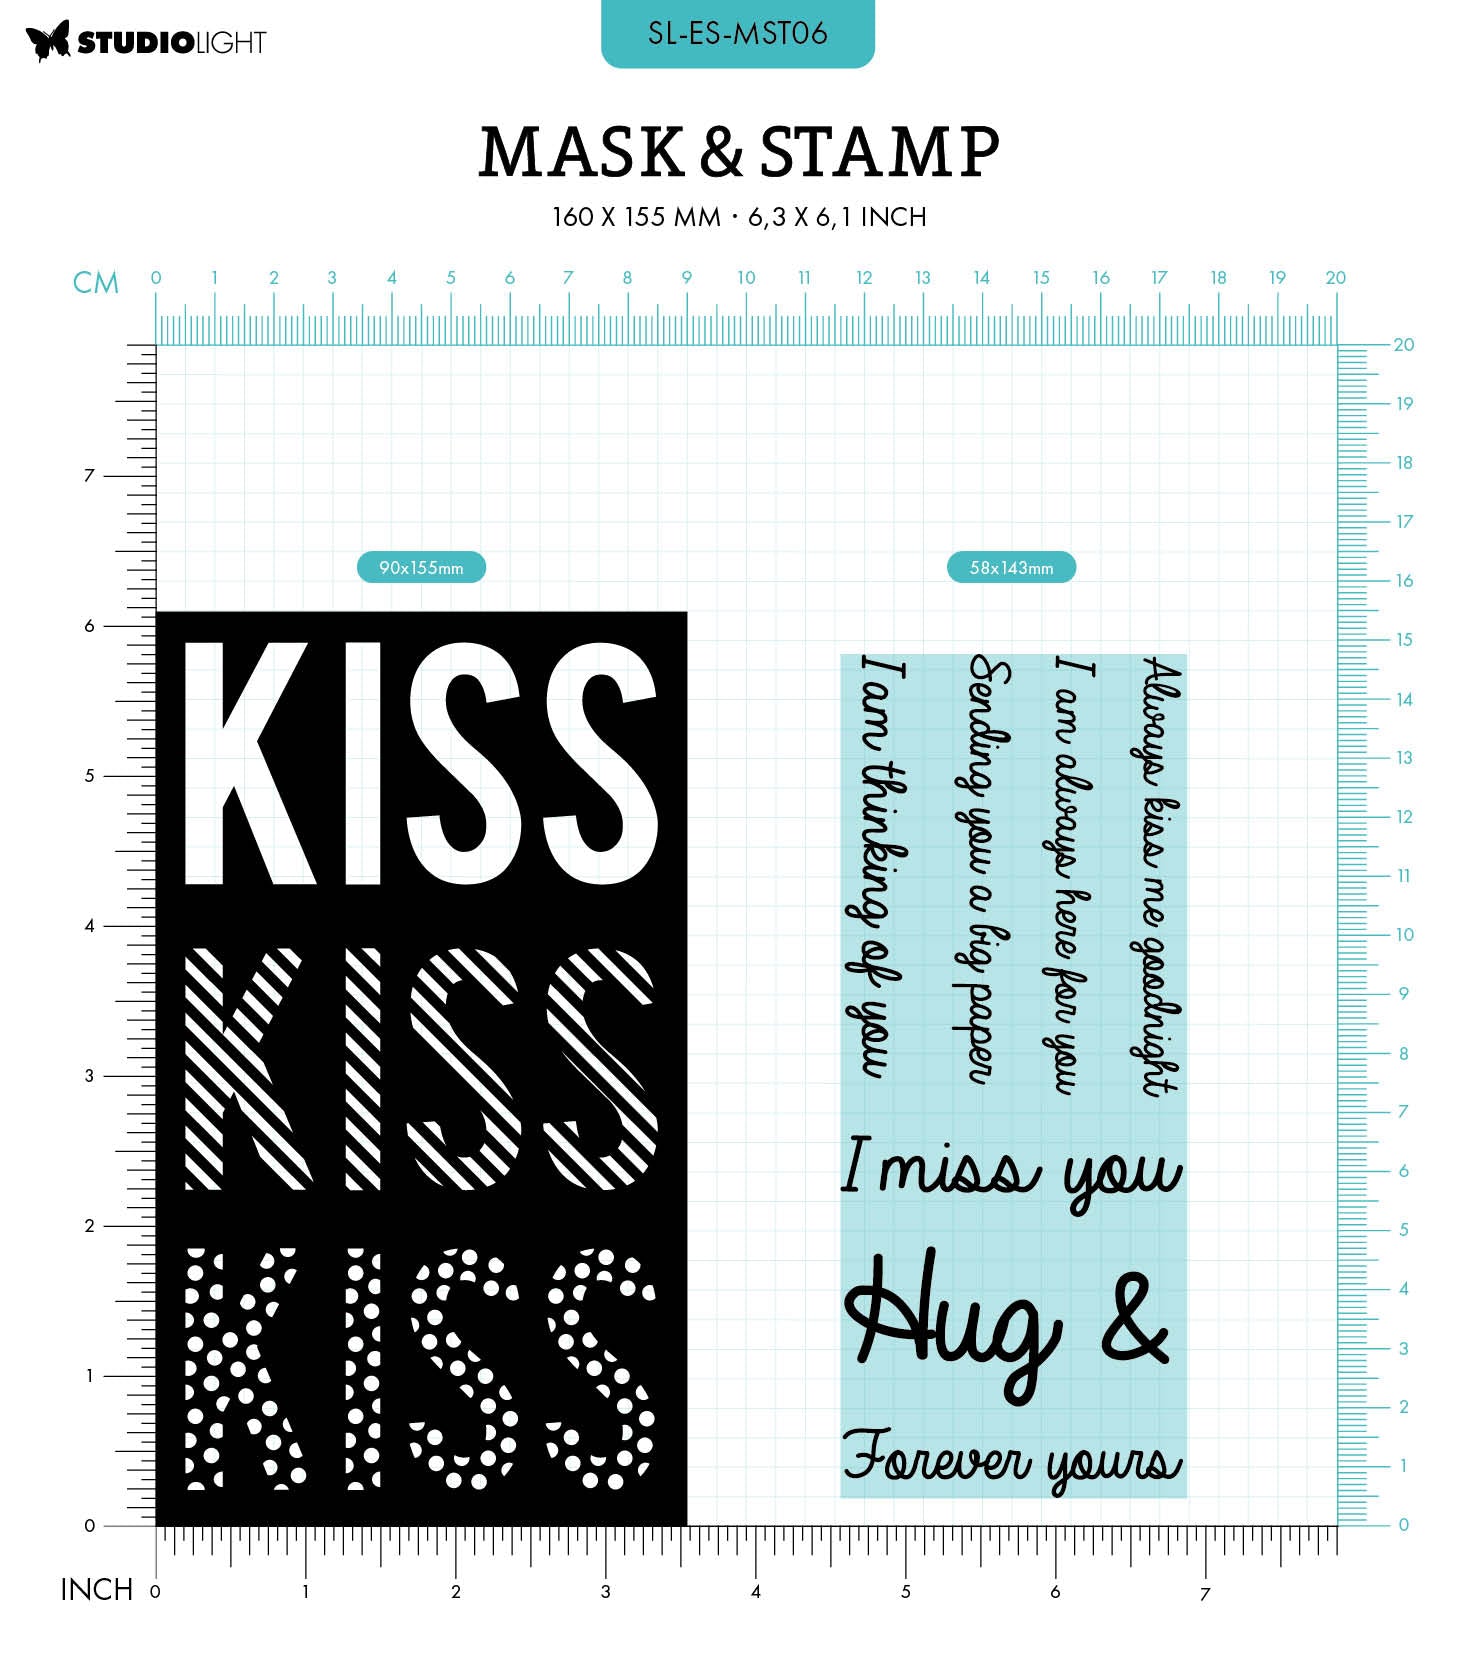 Studio Light - Art by Marlene Essentials - Blending Brushes – Topflight  Stamps, LLC